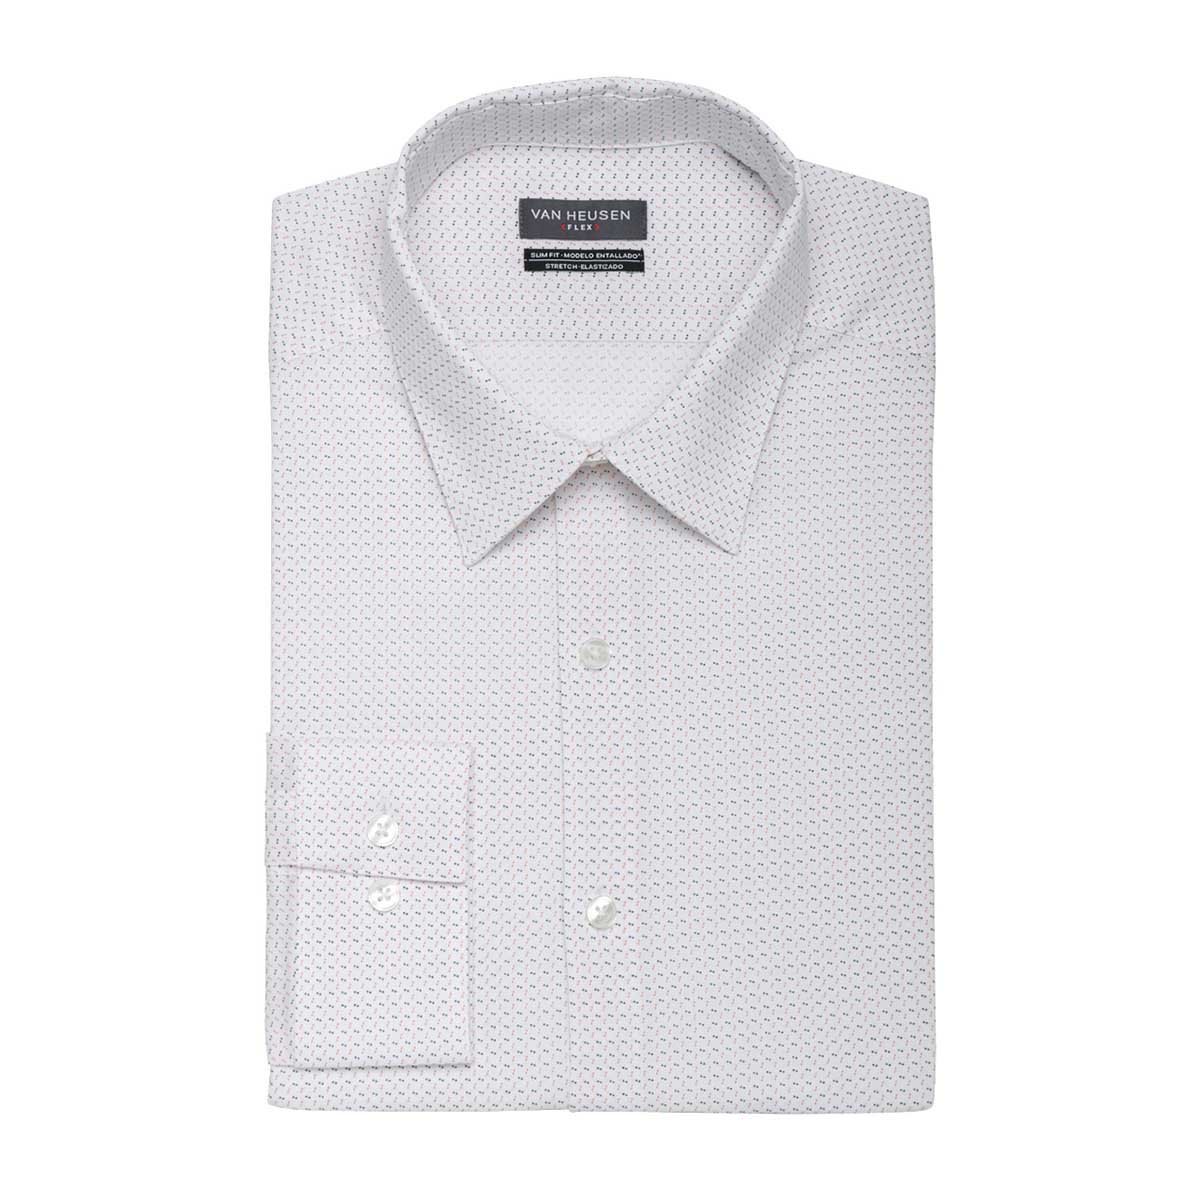 Camisa de Vestir para Caballero Van Heusen Slim Blanco Combinado